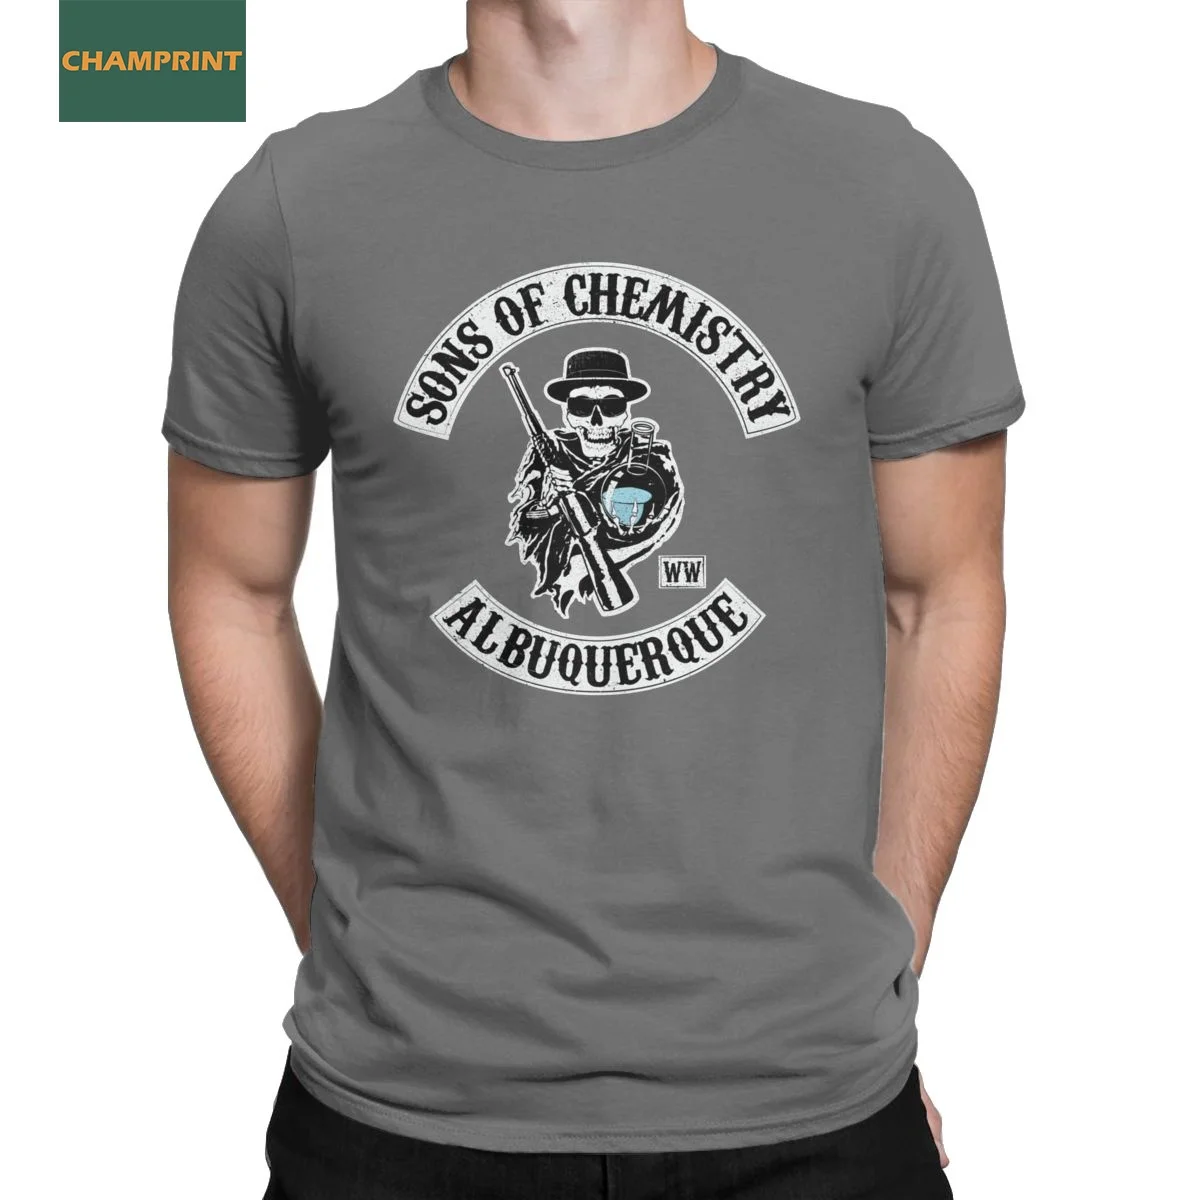 

Мужская футболка с надписью «сыны химии», хлопковая, забавная летняя футболка с коротким рукавом, футболки с округлым вырезом